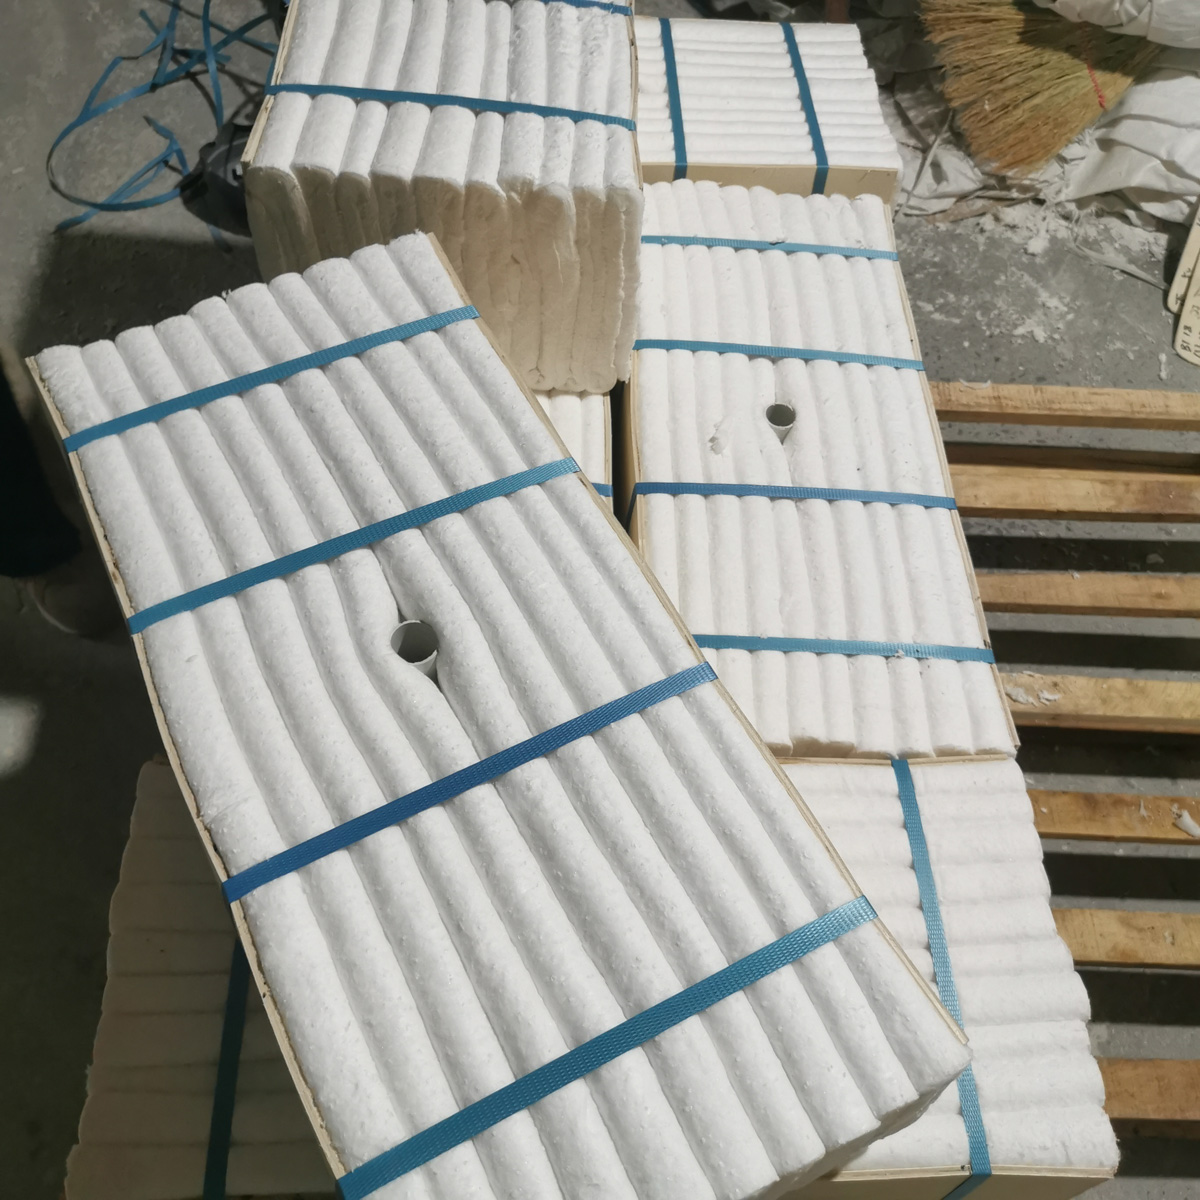 Refractory insulating ceramic fiber modules